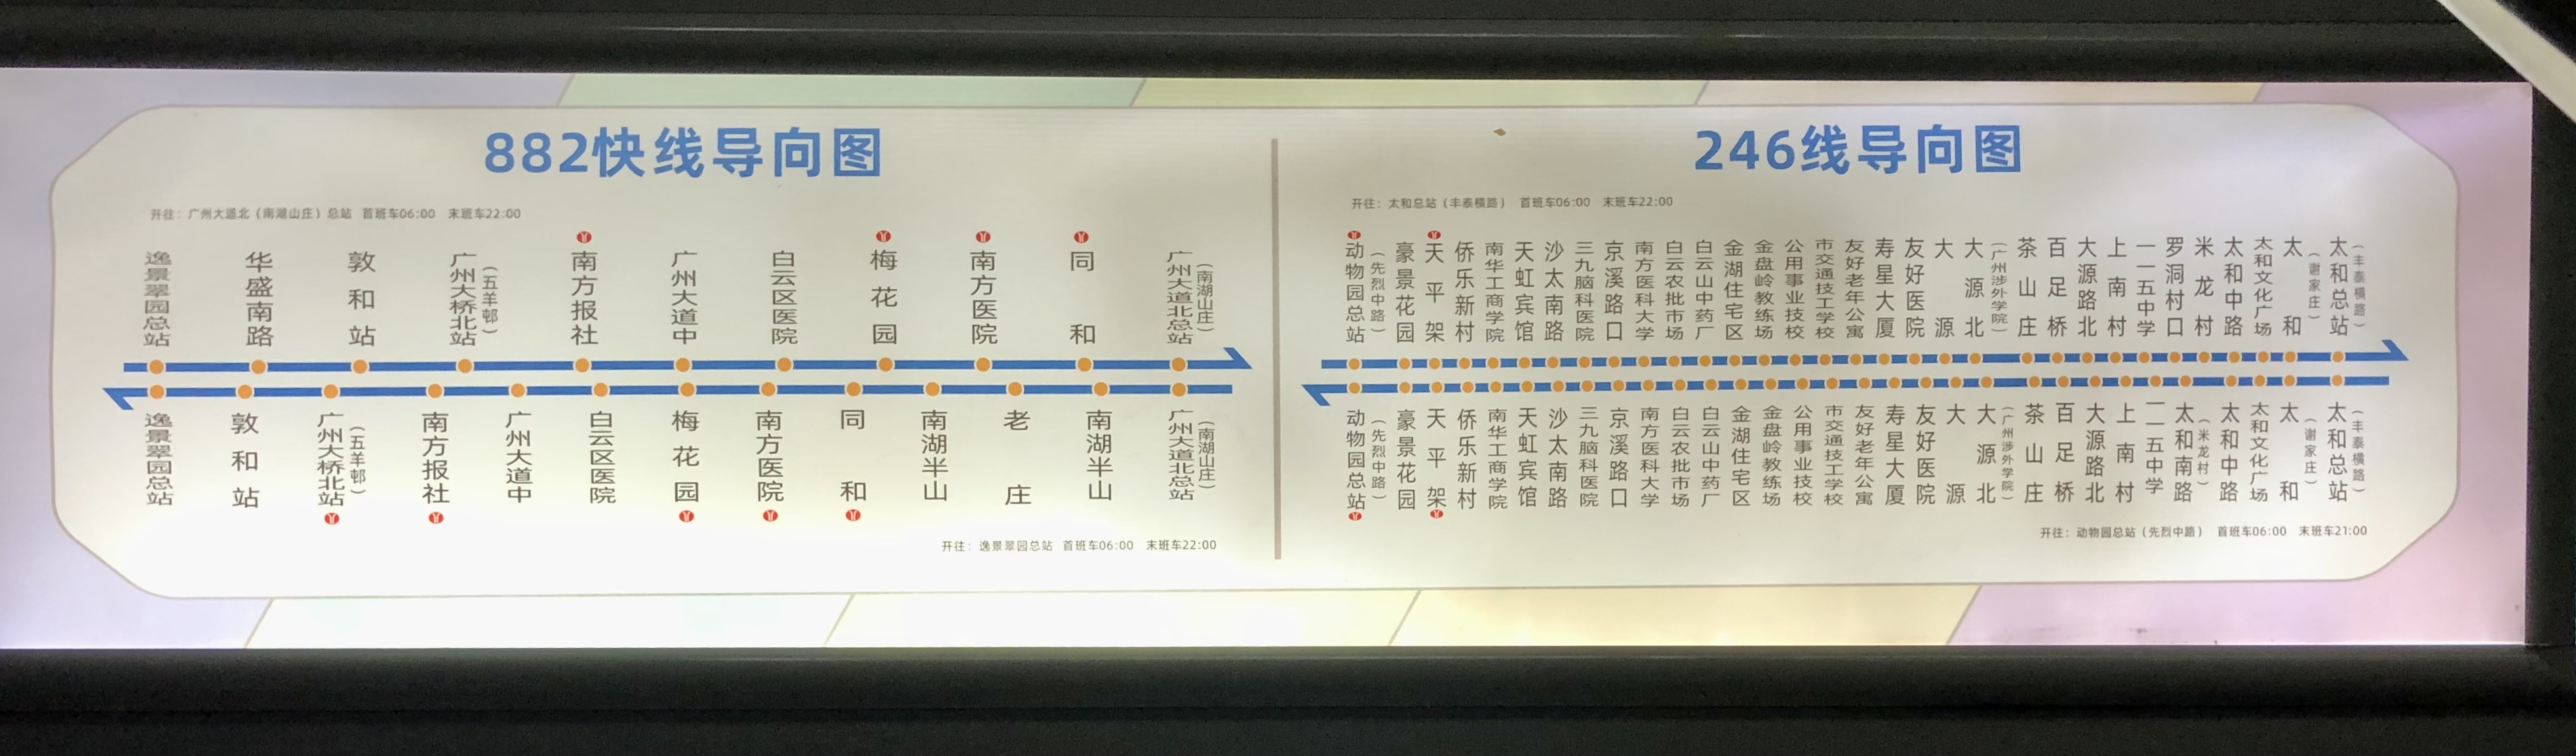 广州246路公交车路线